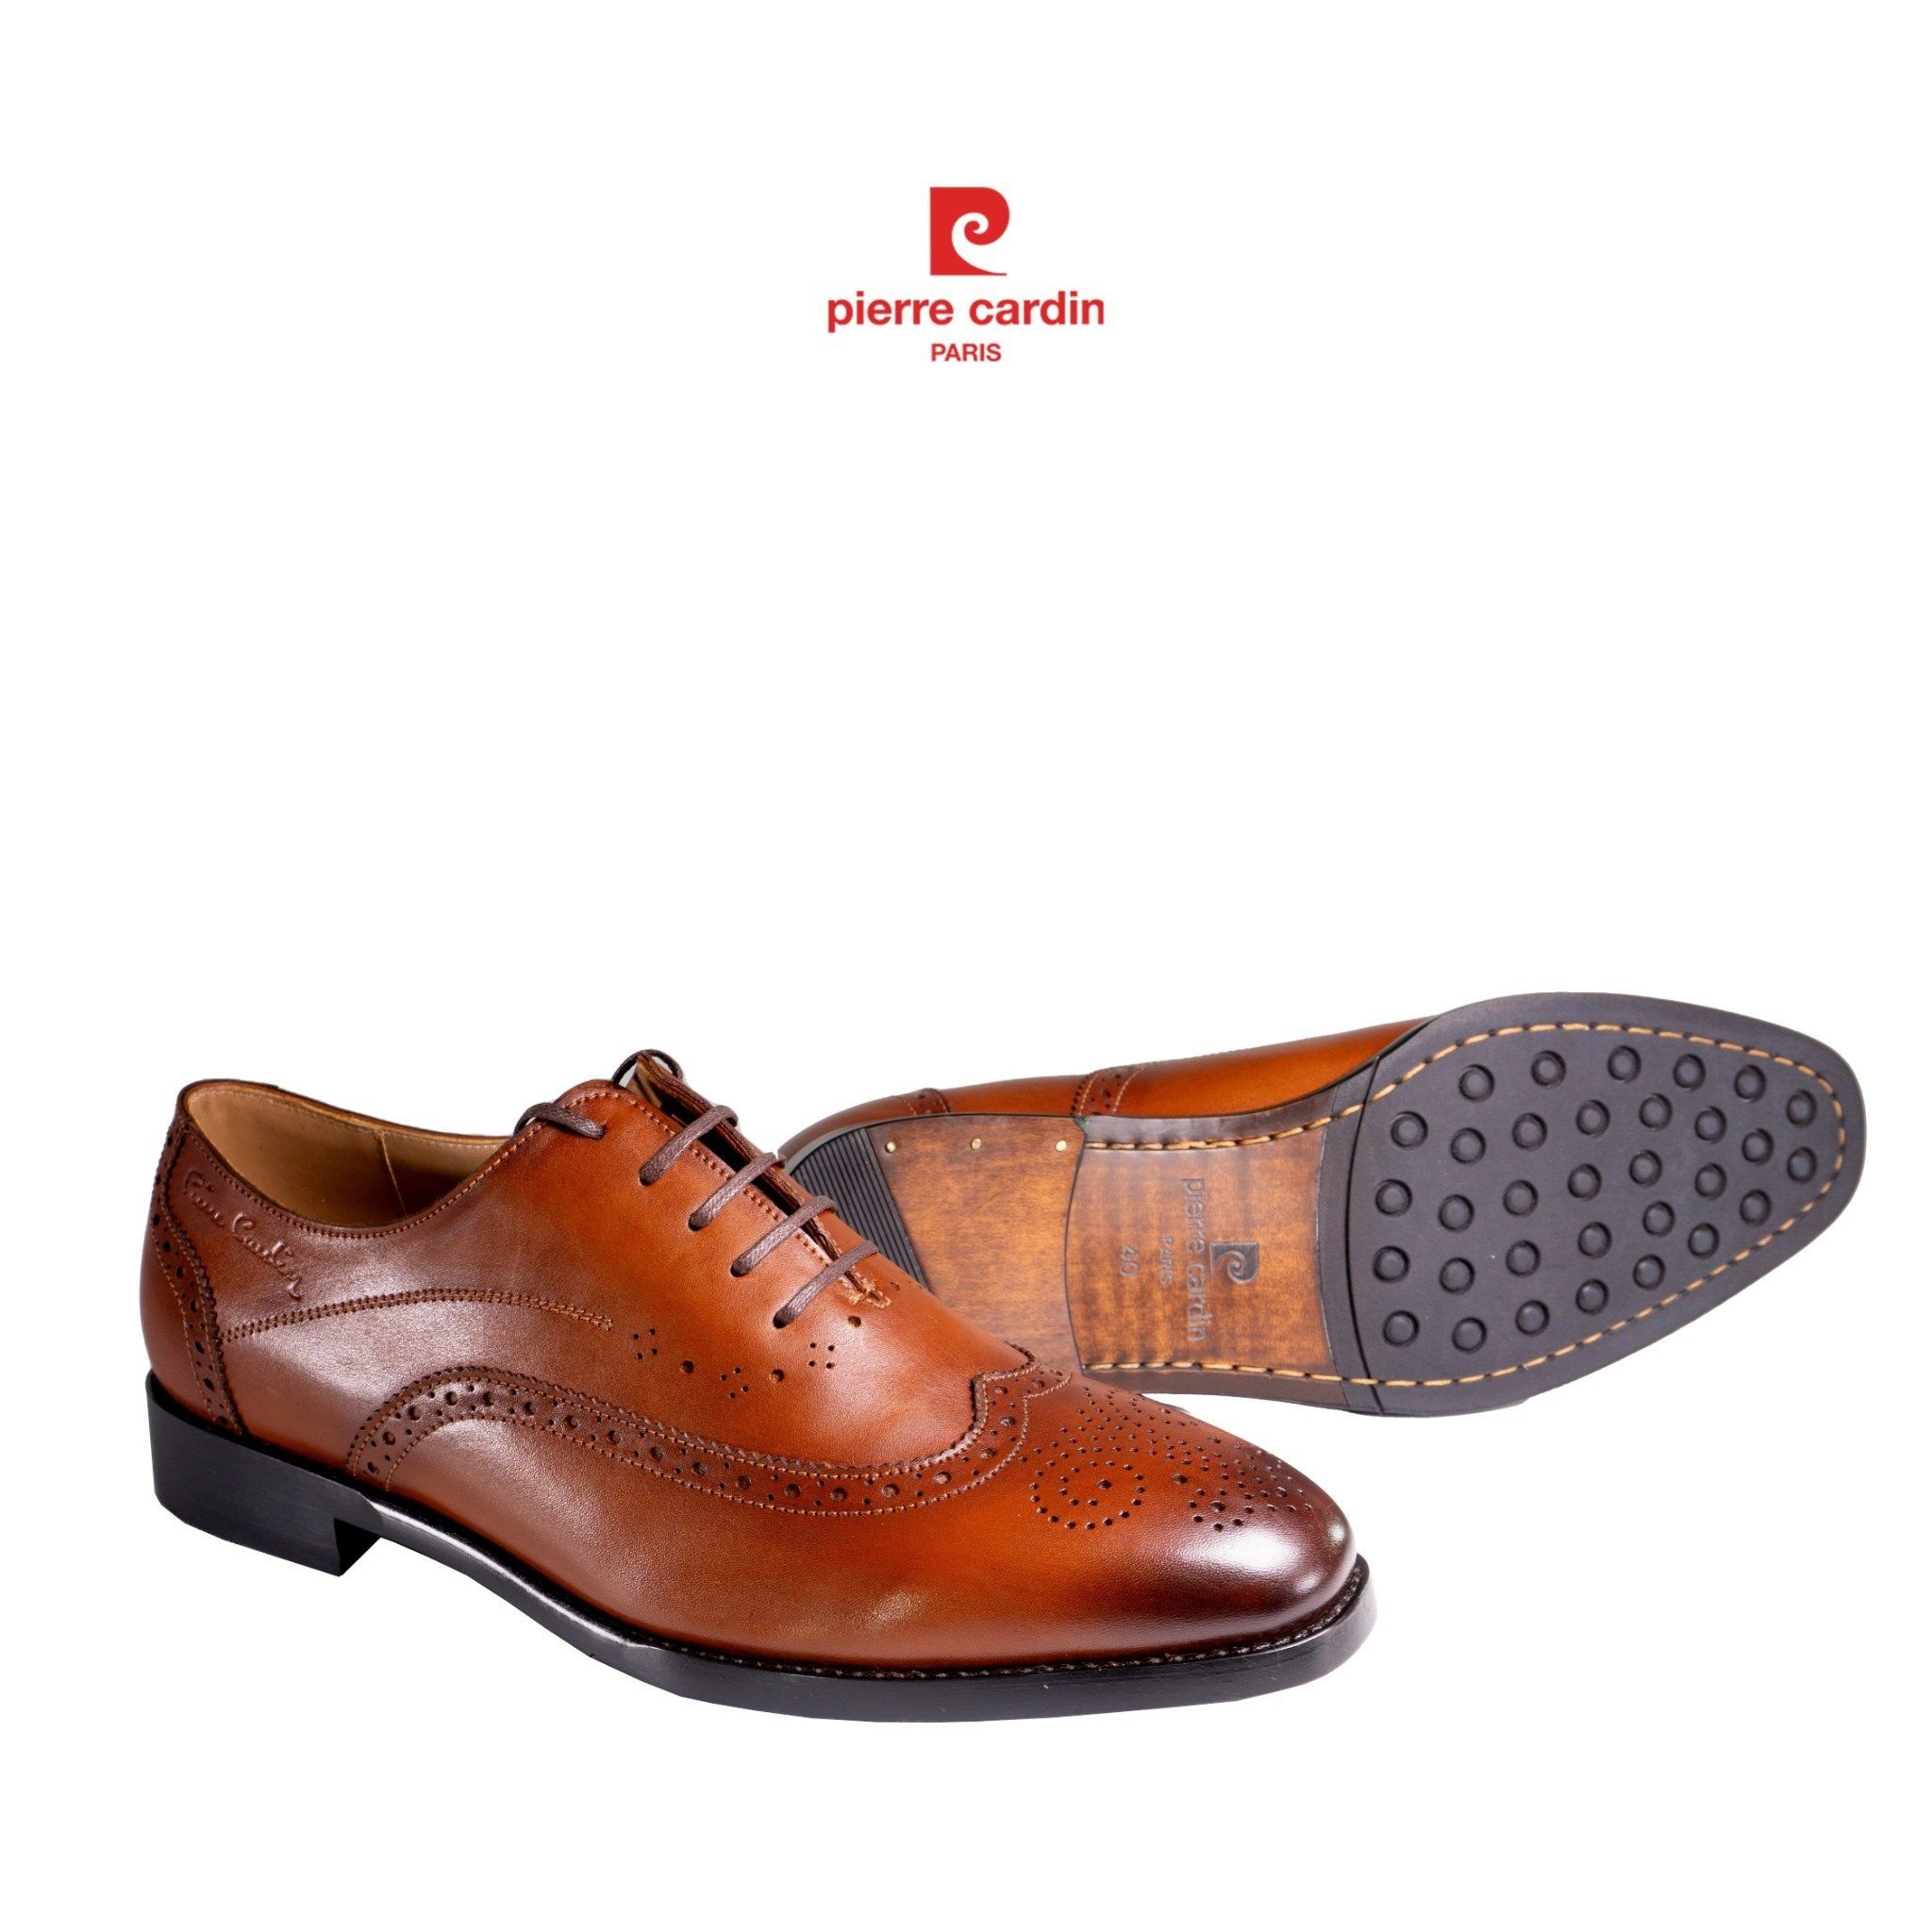 Pierre Cadin Paris Vietnam: Brogue Oxford Shoes - PCMFWLG 357 (GOLD)